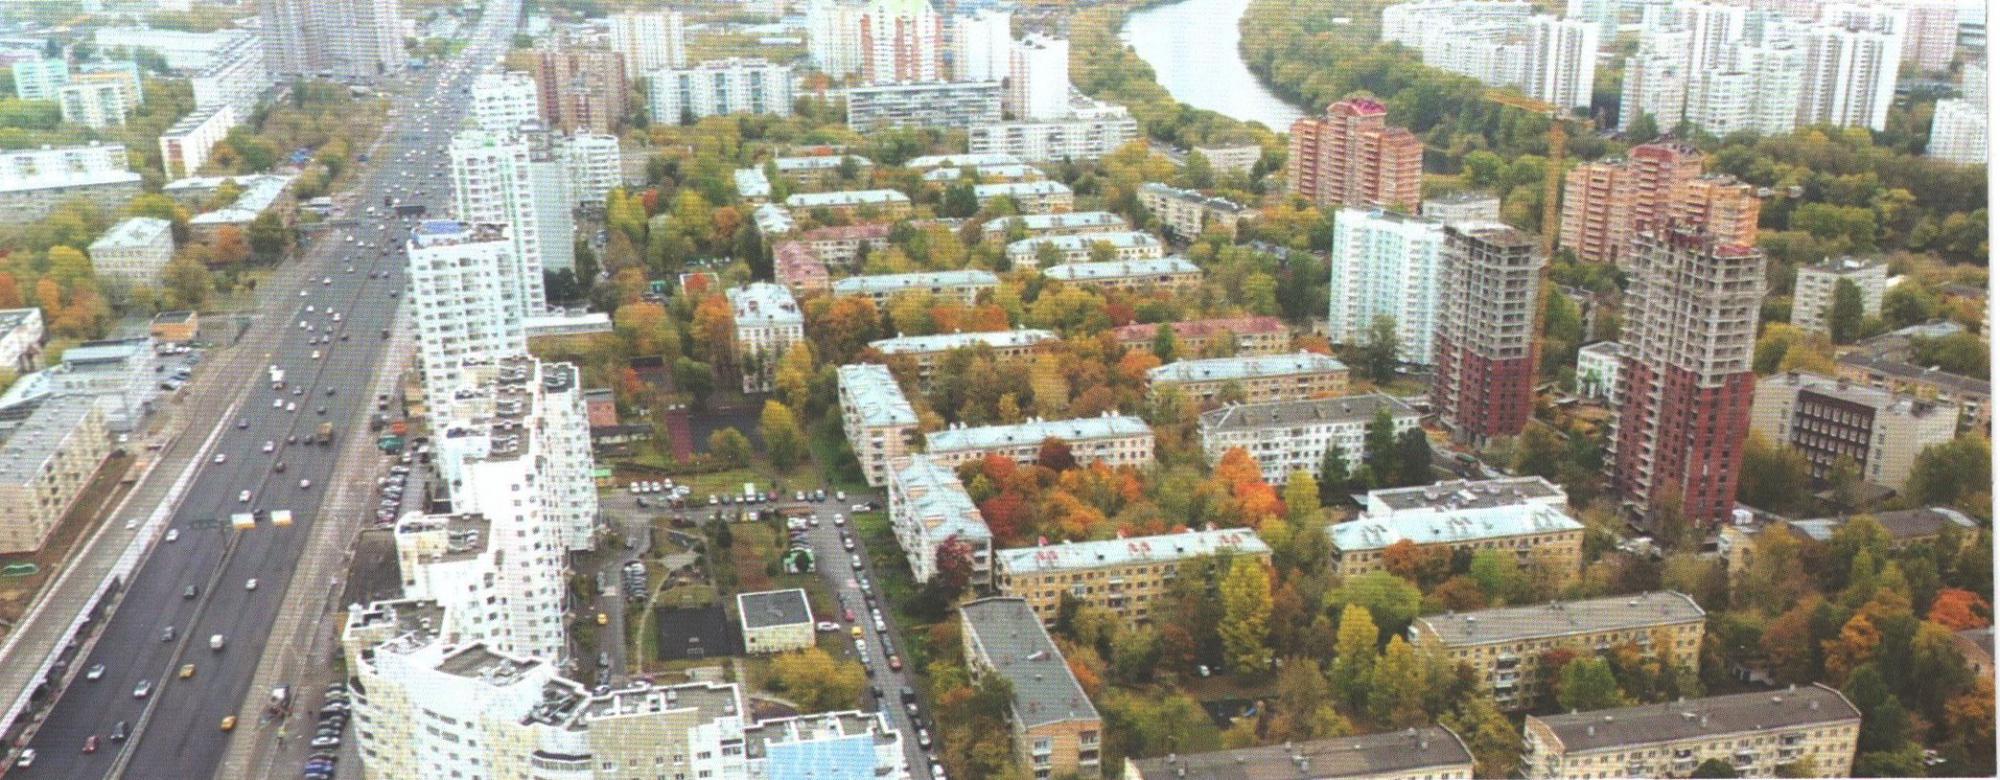 Реновация пятиэтажек в районе Хорошево-Мневники - список домов